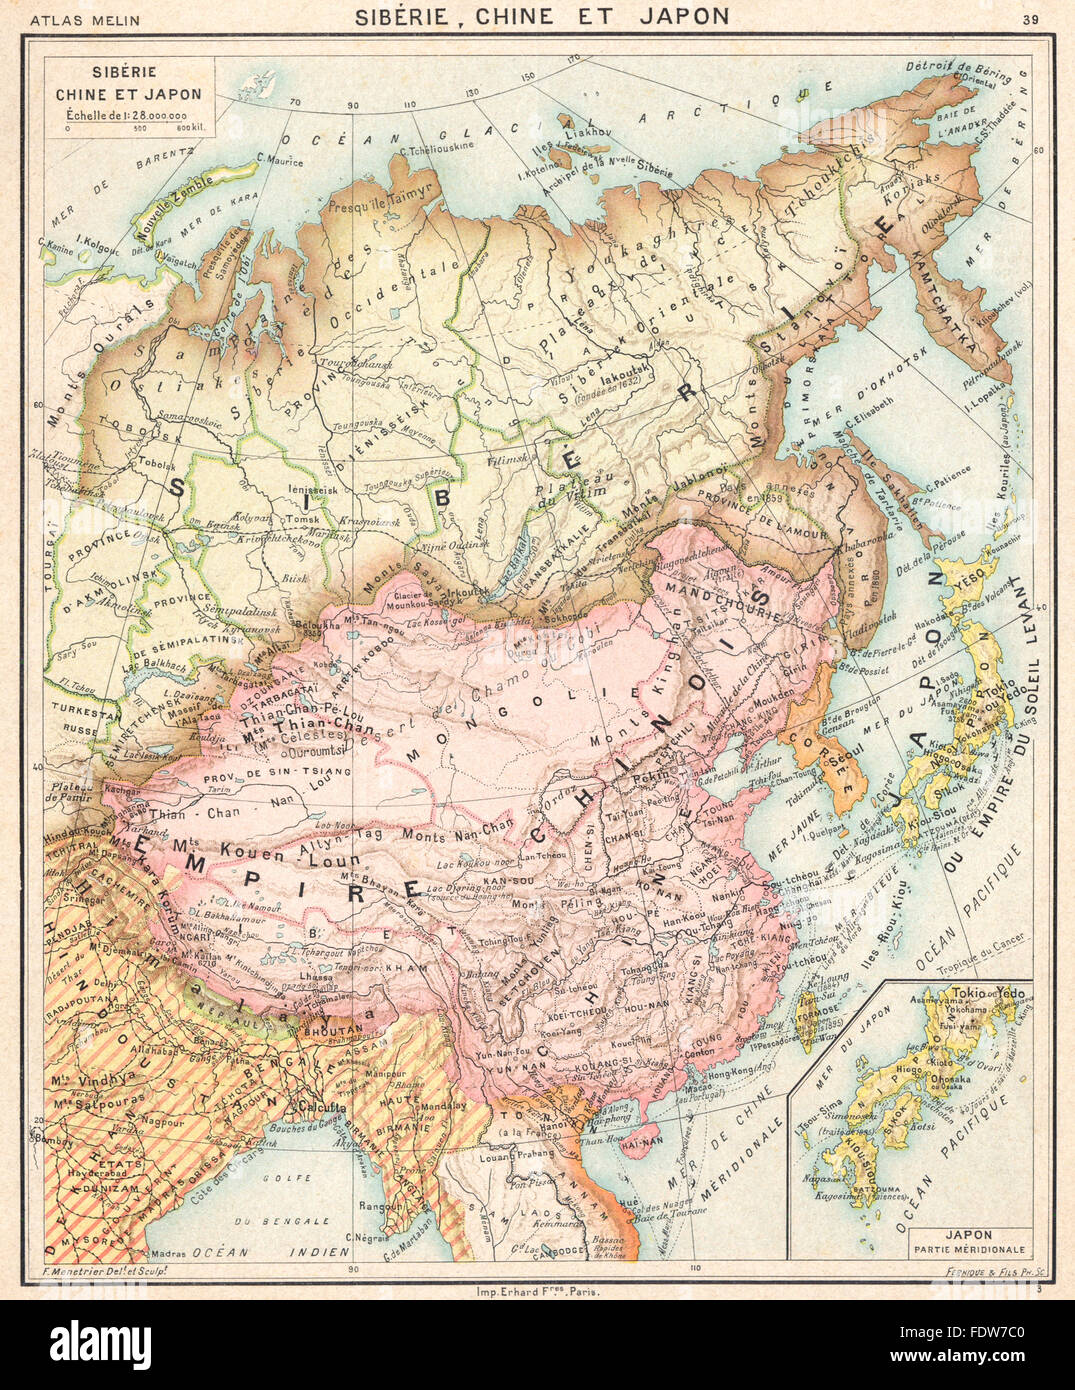 ASIA: Sibérie Chine et Japon; Inset map of Japon Partie Méridionale, 1900 Stock Photo